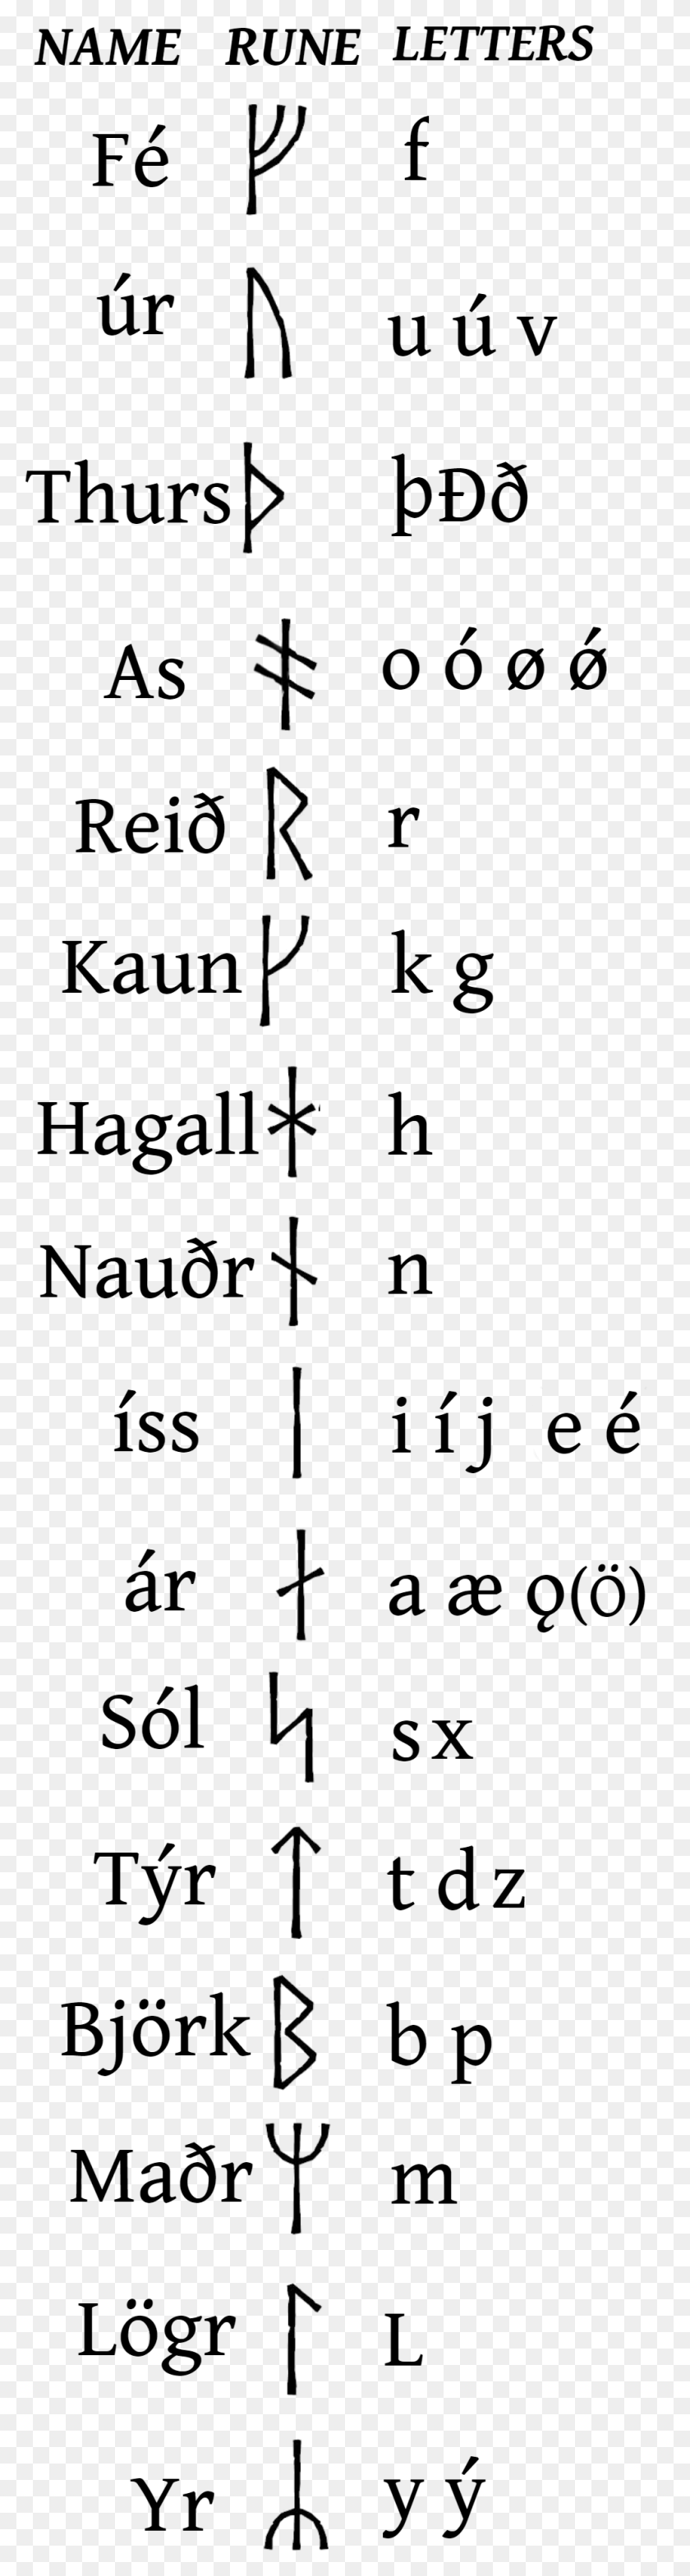 989x3902 Transcription Guide Till Valhalla In Runes, Symbol, Outdoors, Cross Descargar Hd Png